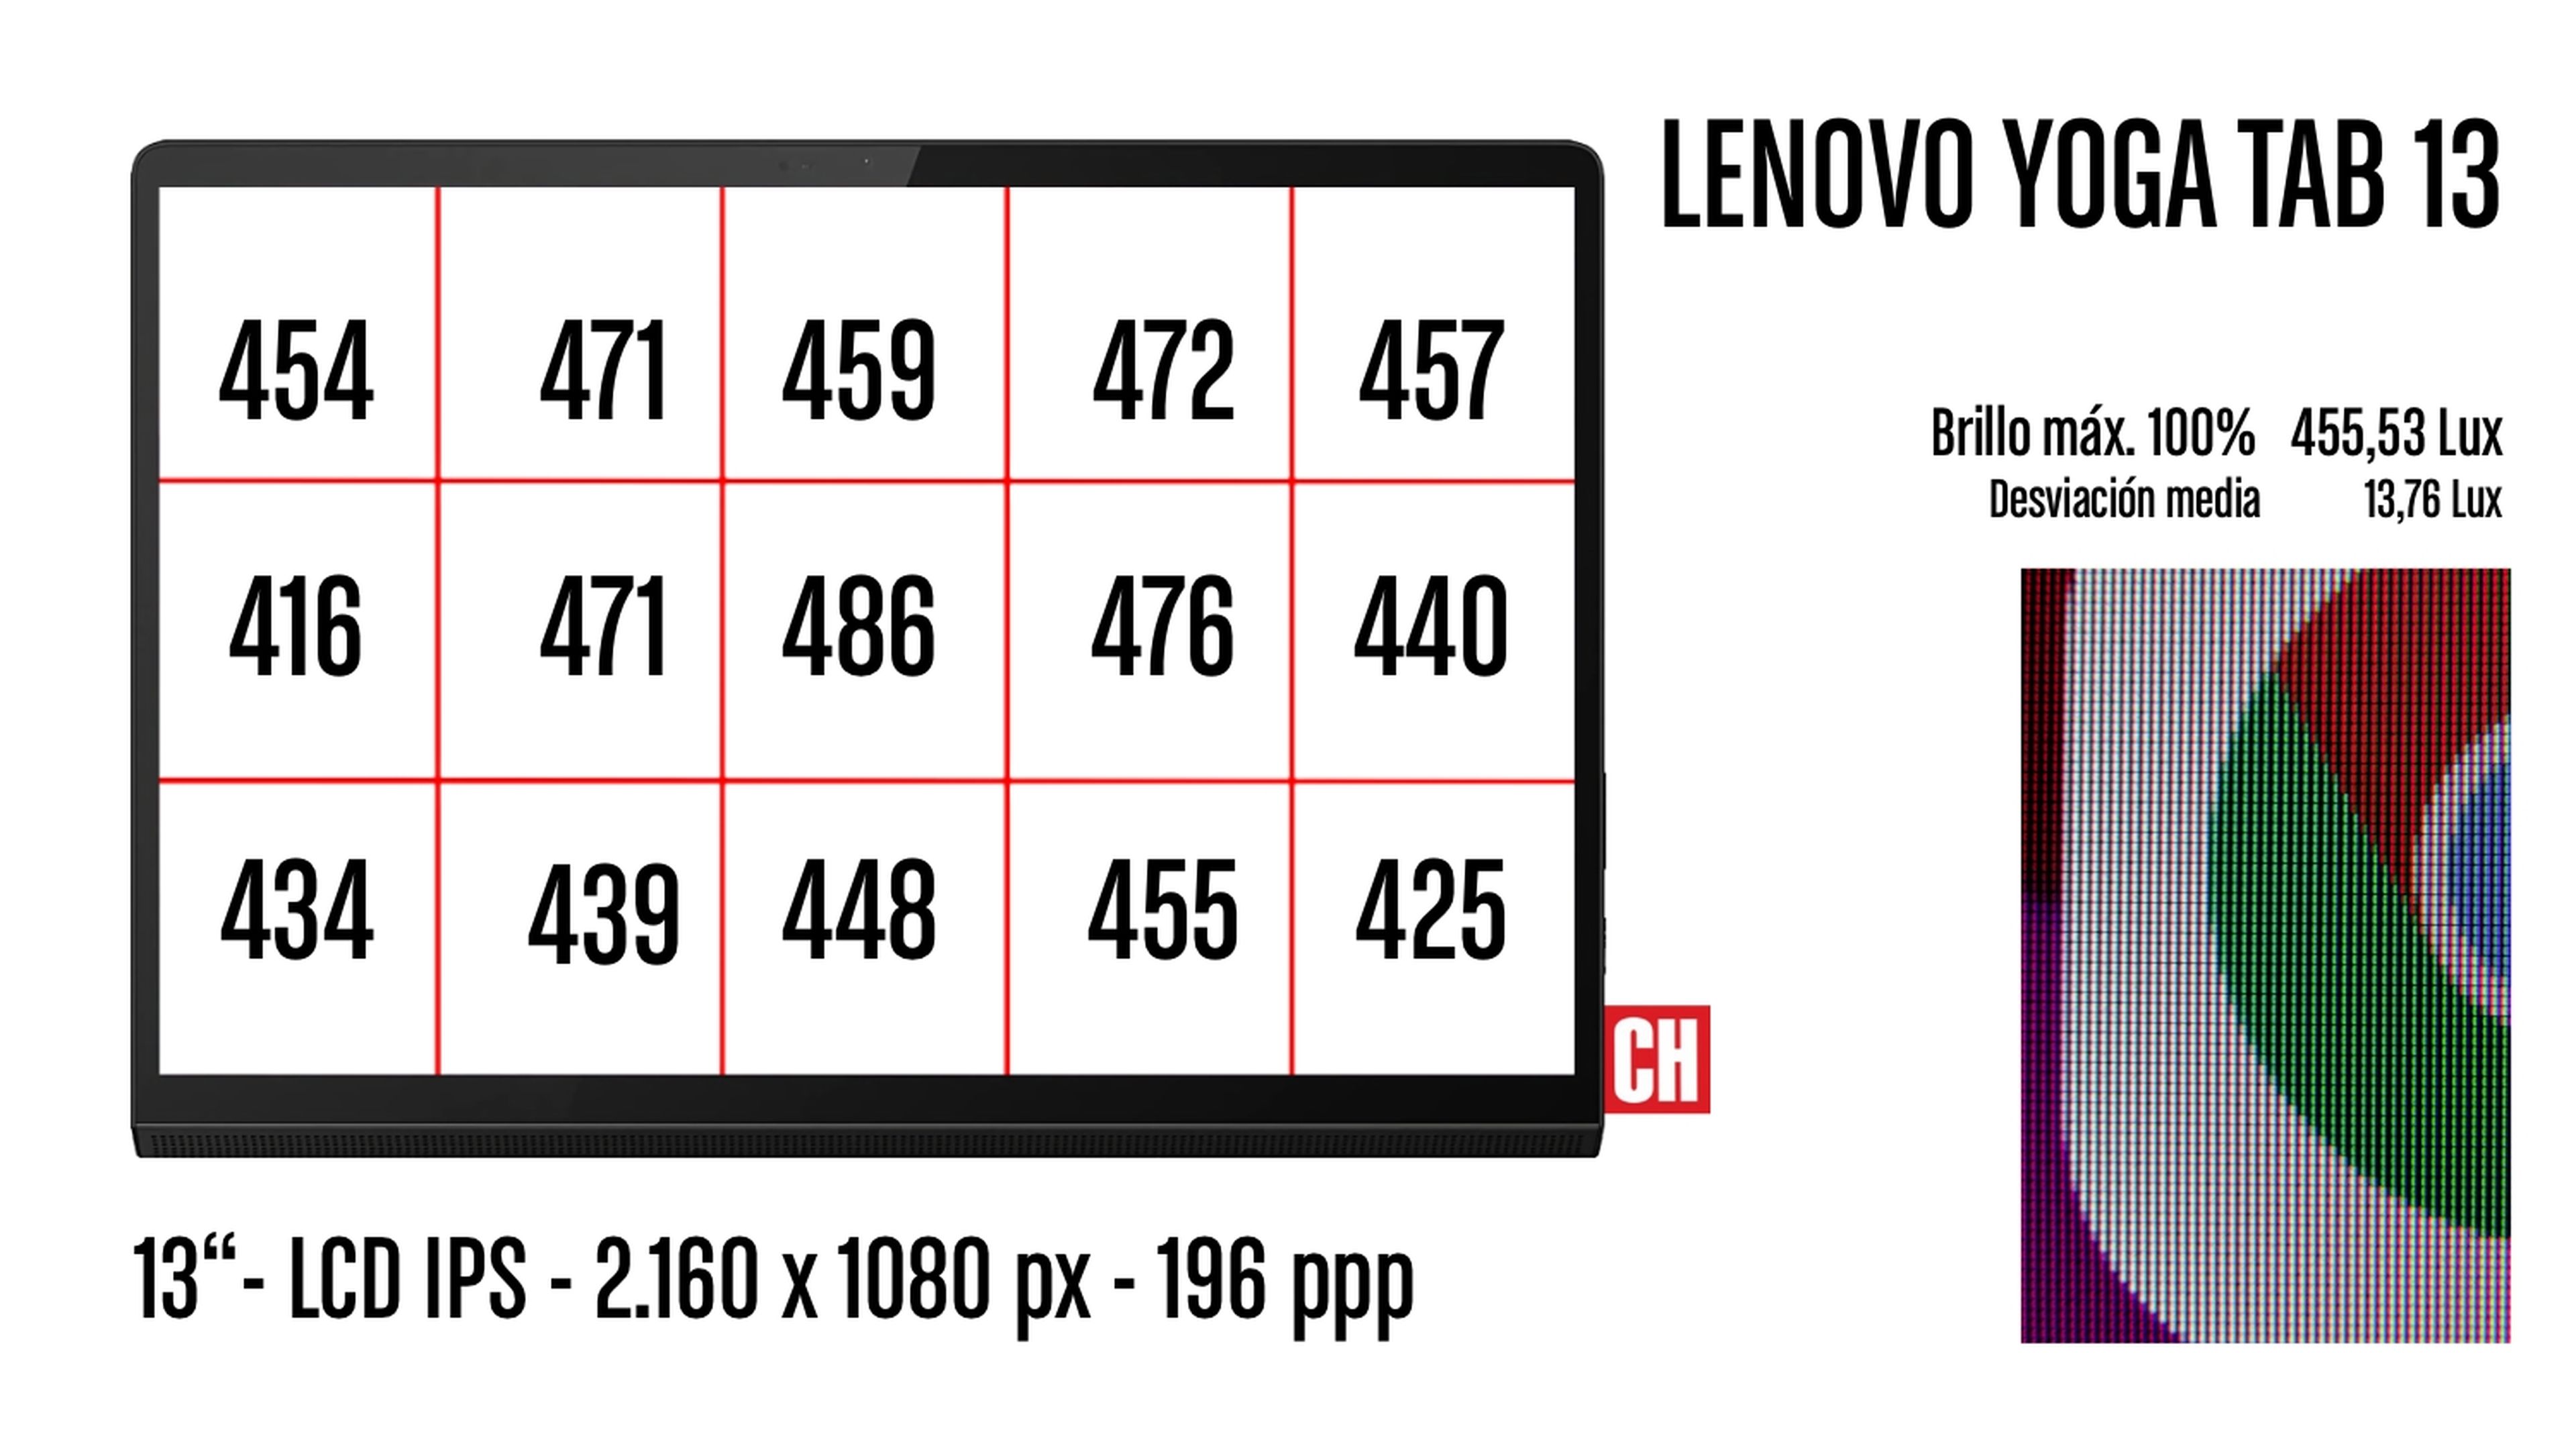 Lenovo Yoga Tab 13, análisis y opinión